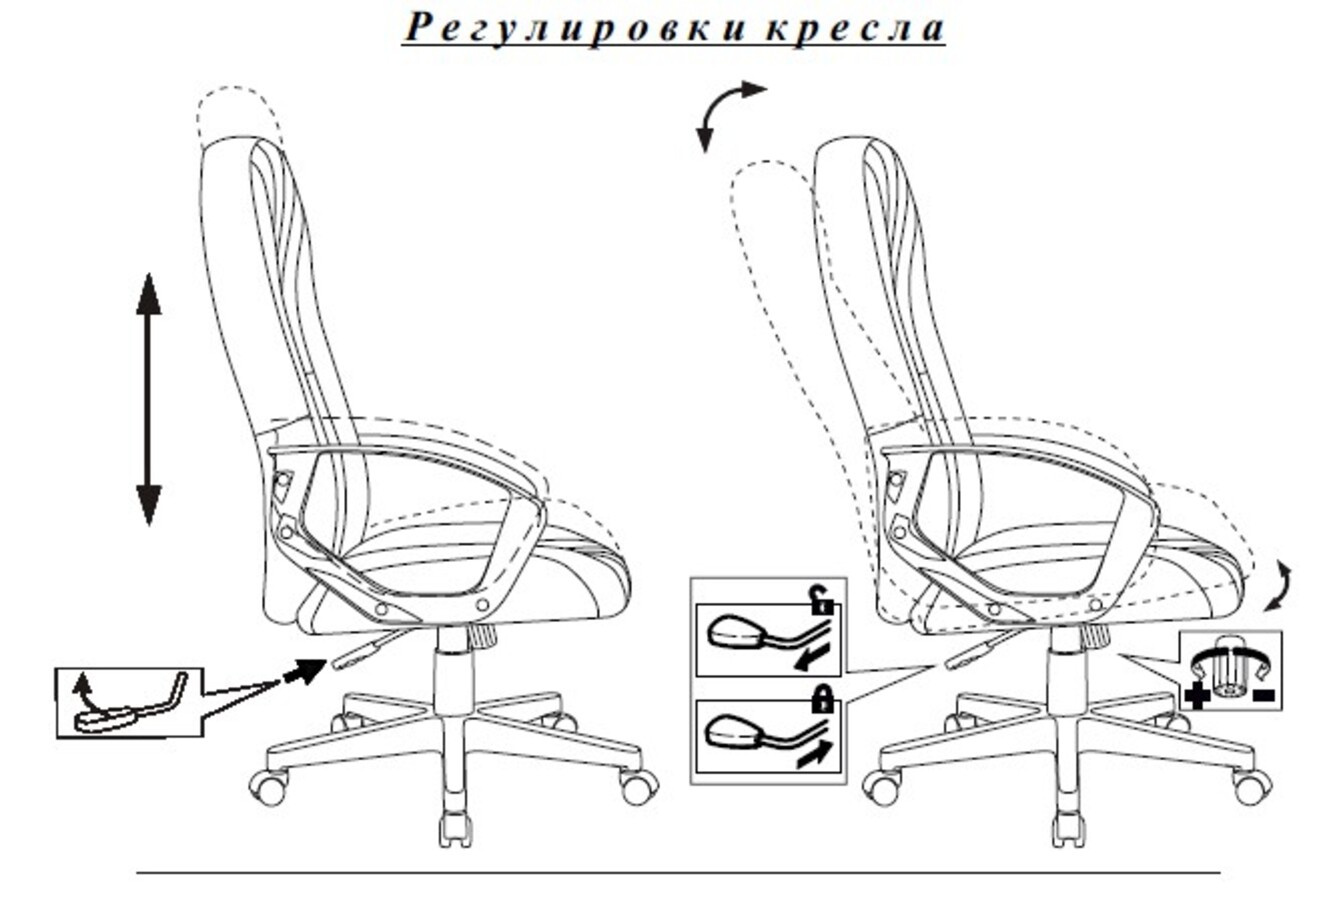 Кресло руководителя Бюрократ T-898, обивка: ткань, цвет: черный 3С11 (T-898/3C11BL) от магазина Buro.store